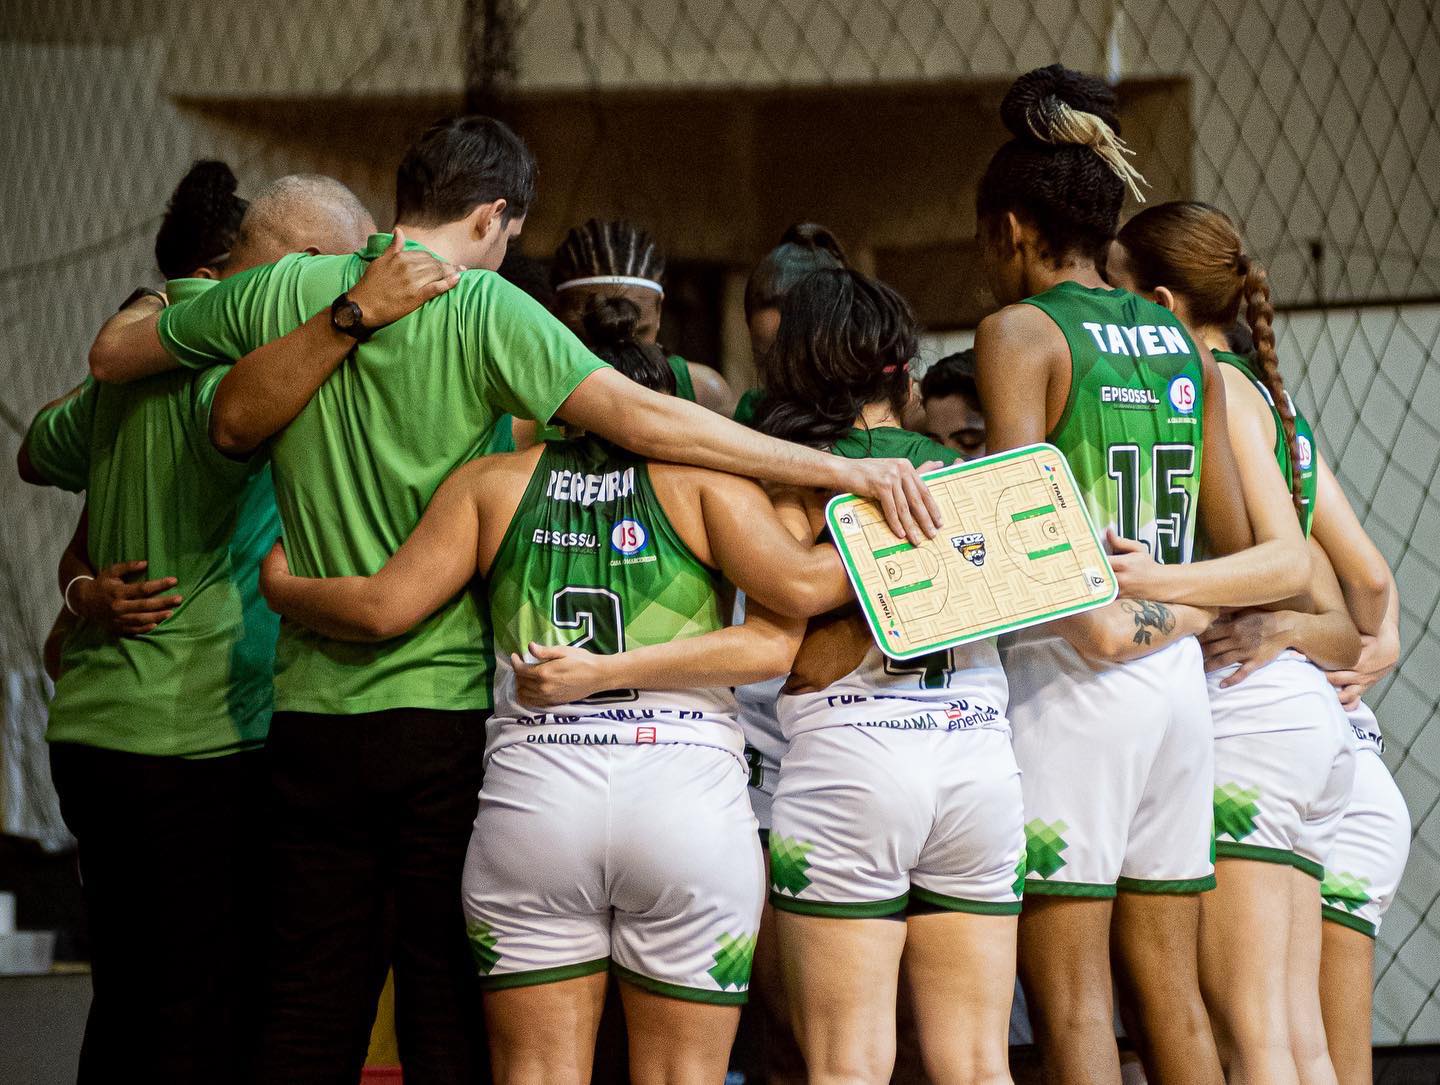 Basquete: Sport inicia disputa do Campeonato Brasileiro Interclubes Sub-23  feminino - Sport Club do Recife